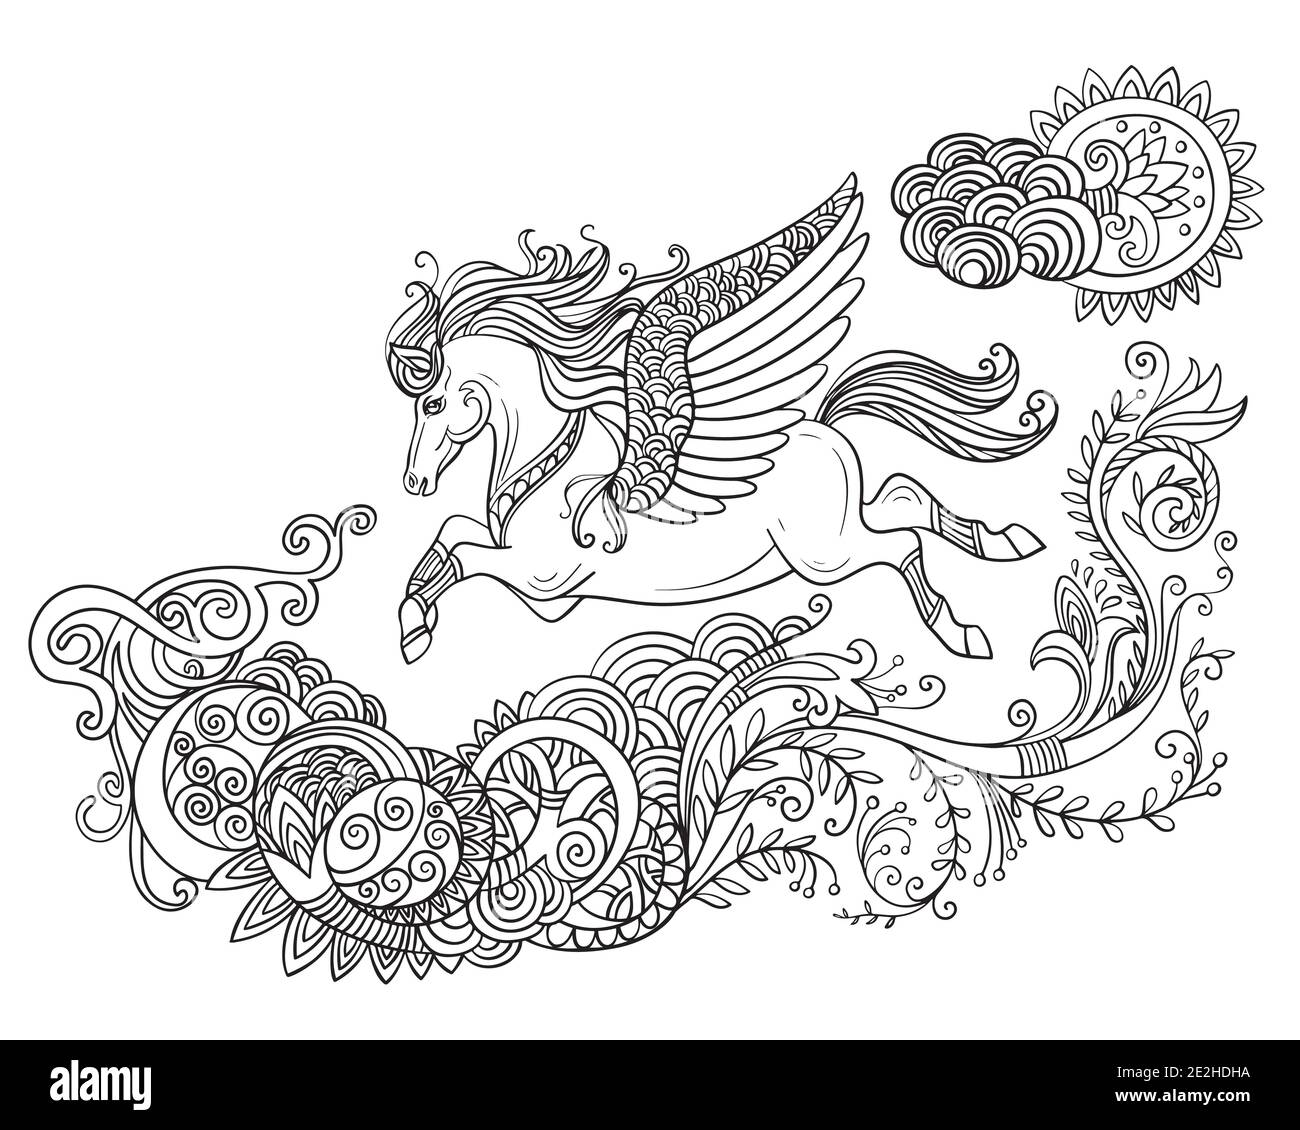 Dessin d'un cheval isolé avec des ailes et une longue manie. Style enchevêtrement pour livre de coloriage pour adultes, tatouage, t-shirt design, logo, signe. Illustration stylisée de ho Illustration de Vecteur